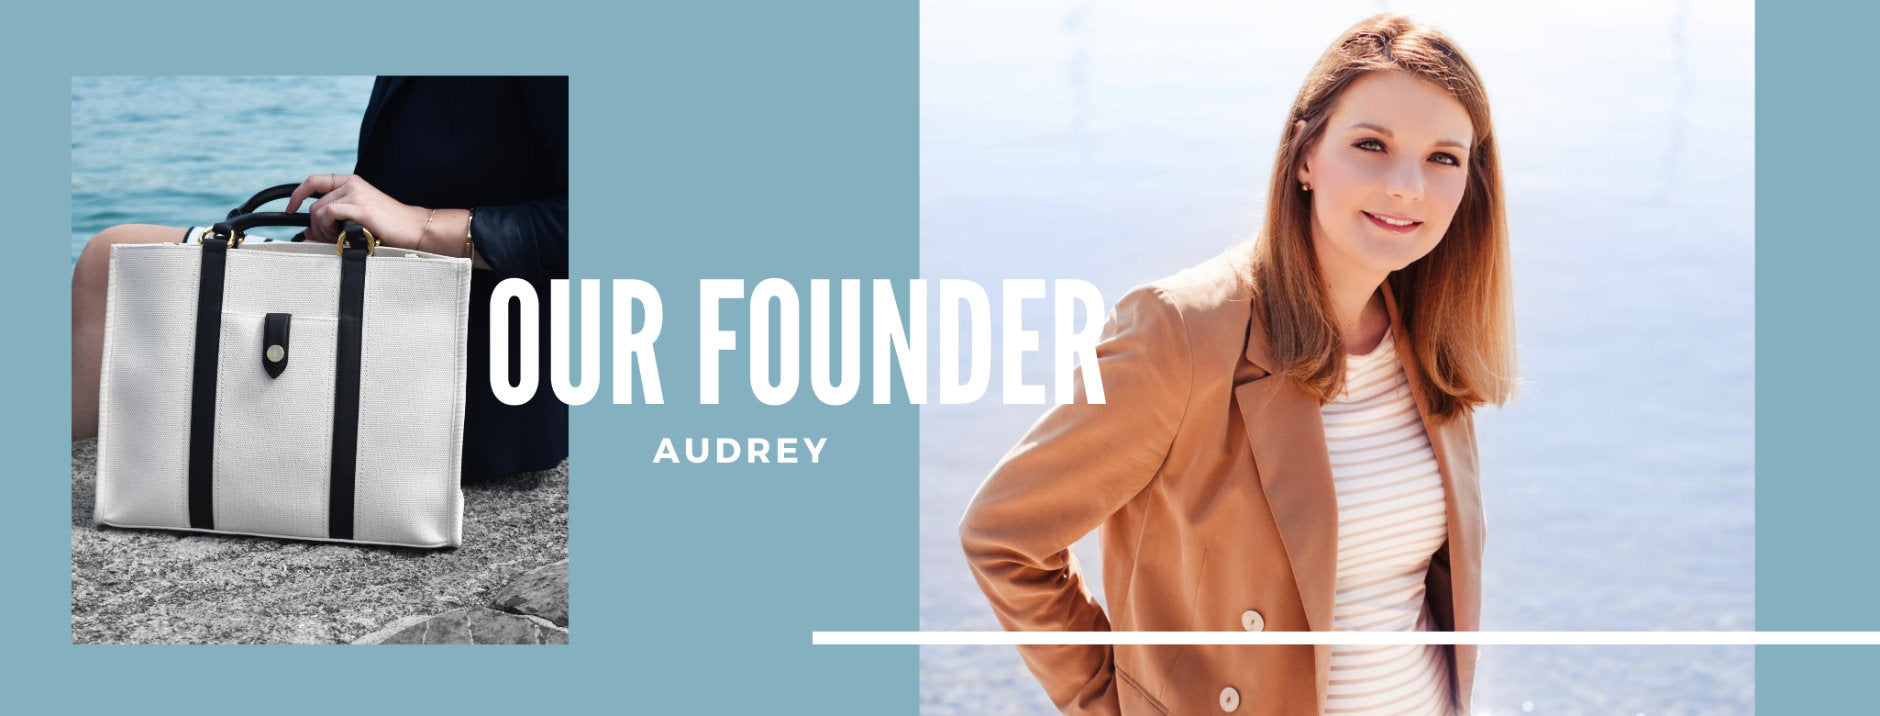 Audrey, notre fondatrice